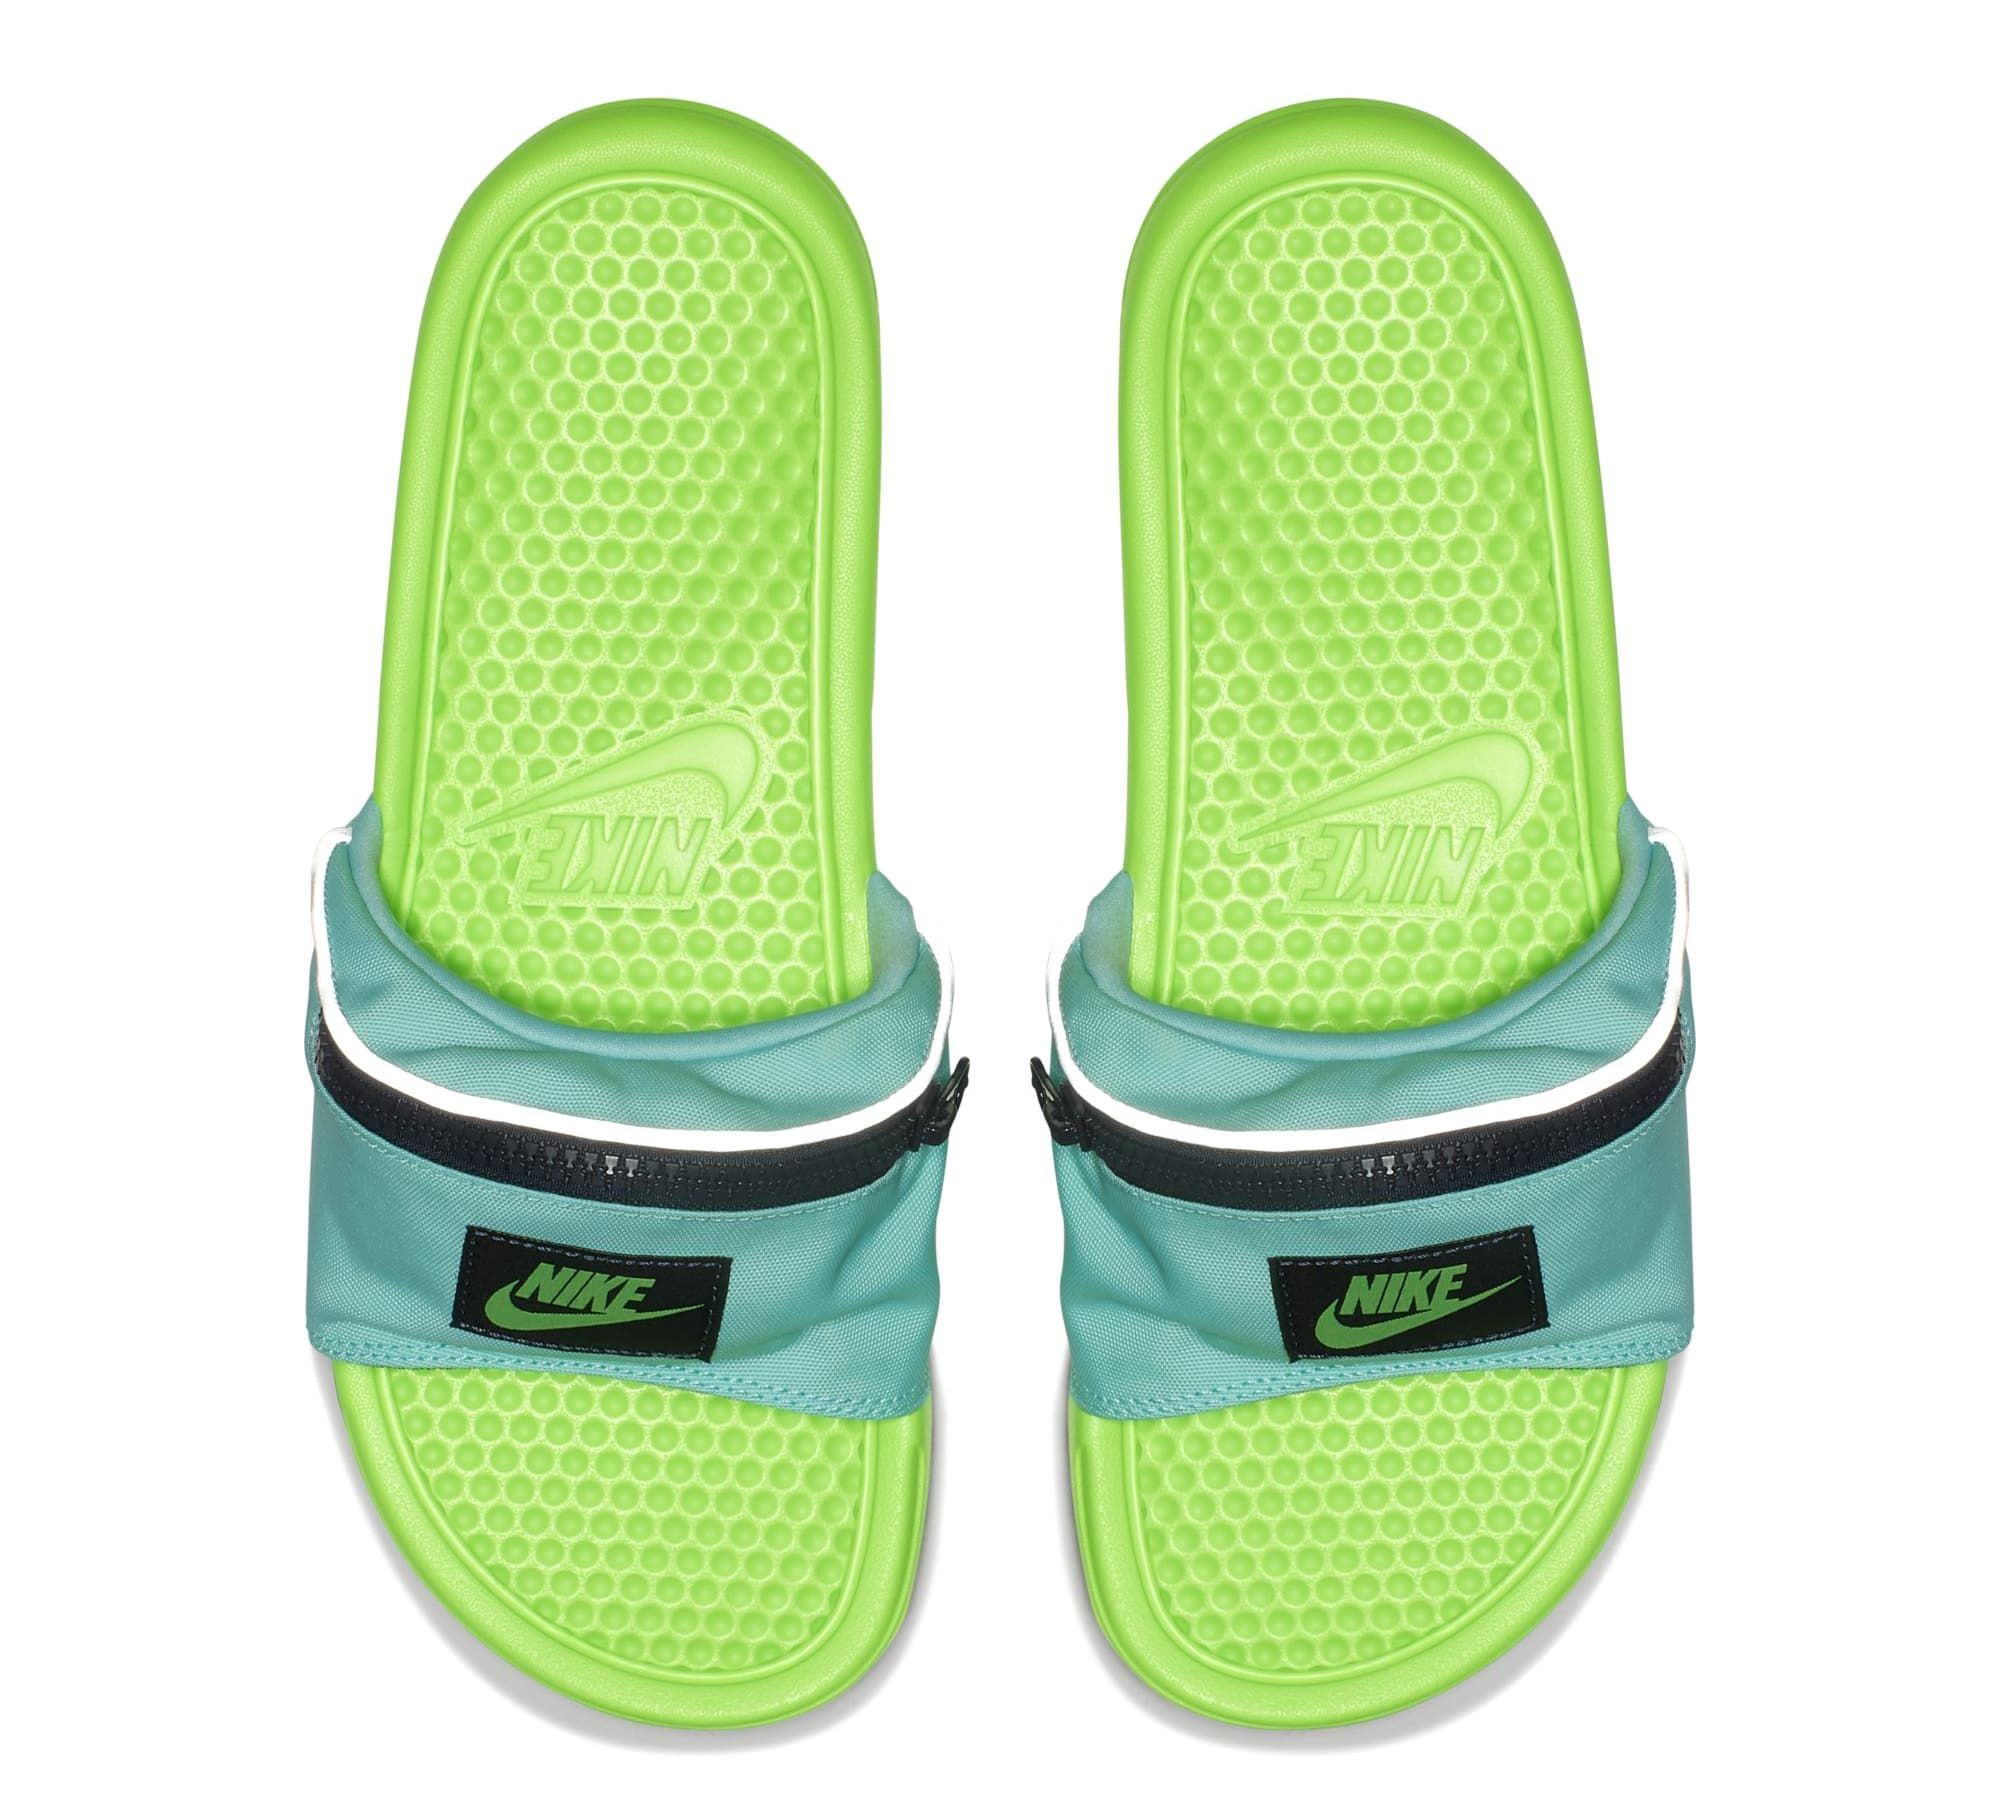 dek ik heb nodig inhalen Nike Fanny Pack Slides Are the Best Summer Sandals a Man Could Ask For